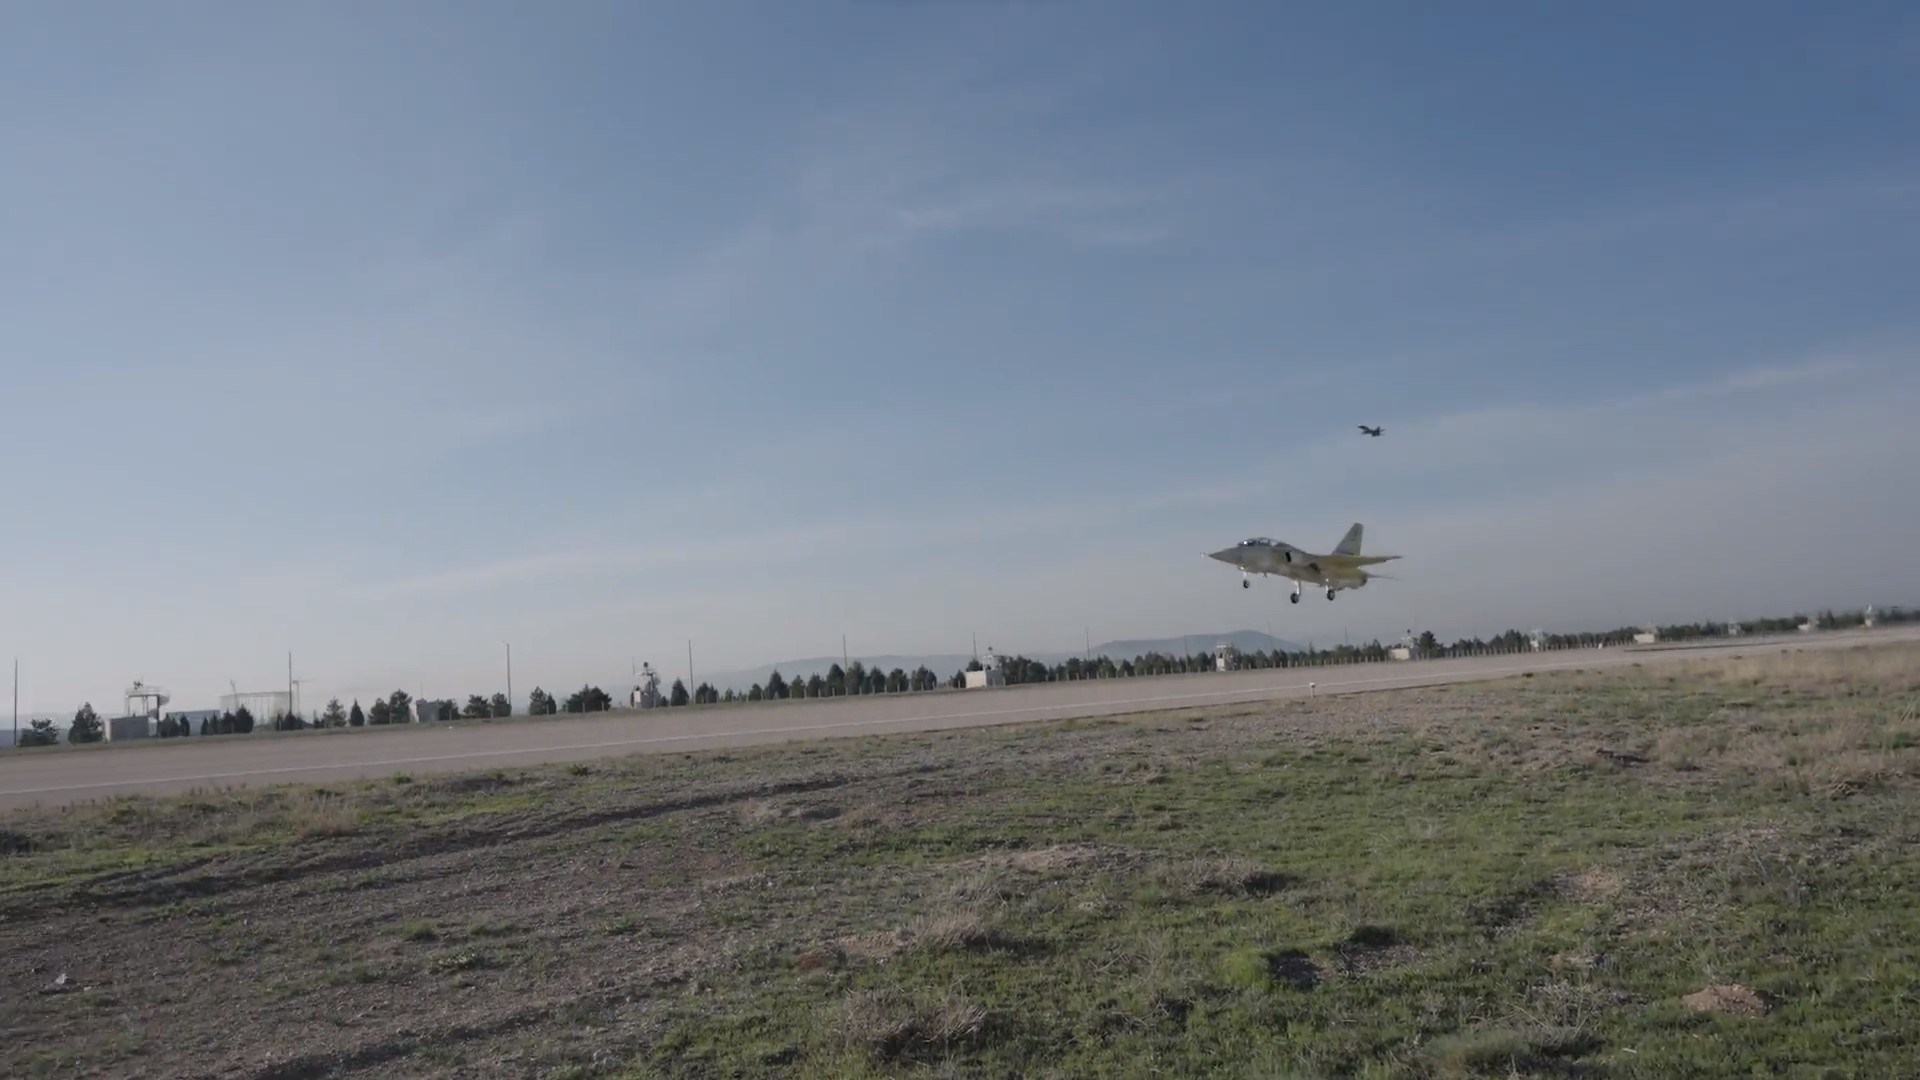 Yerli jet uçağı Hürjet ilk uçuşunu gerçekleştirdi (Video)